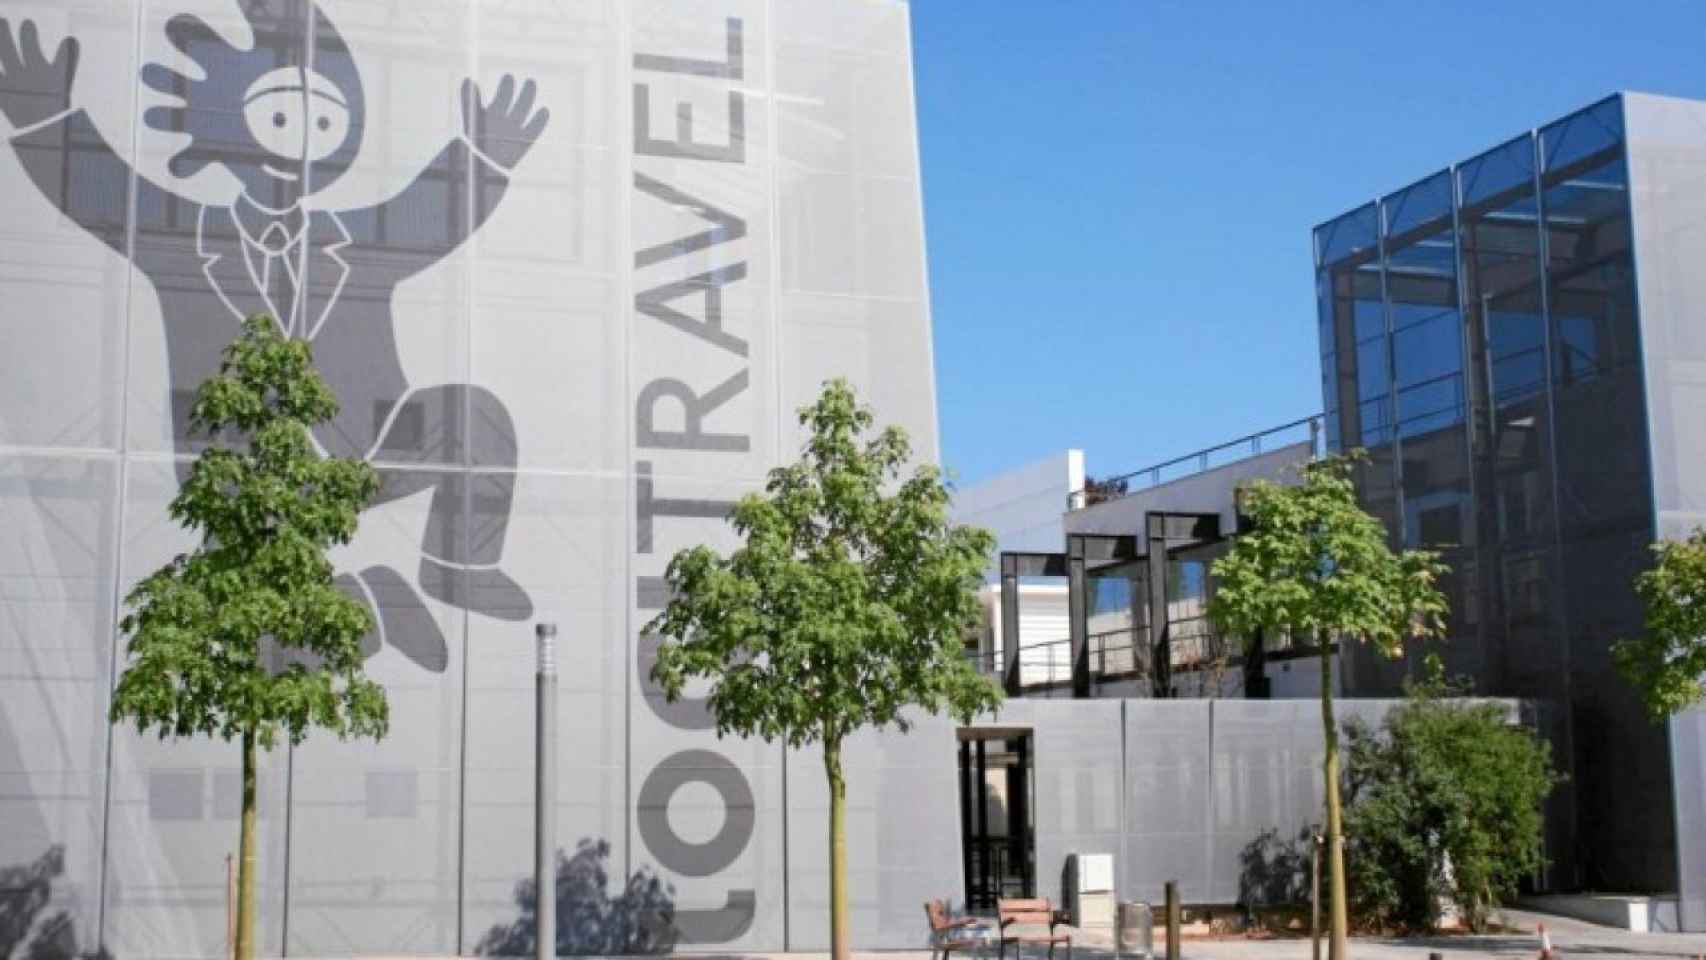 Logitravel pondrá en marcha un ERE en tres filiales mientras negocia una fusión con Viajes El Corte Inglés